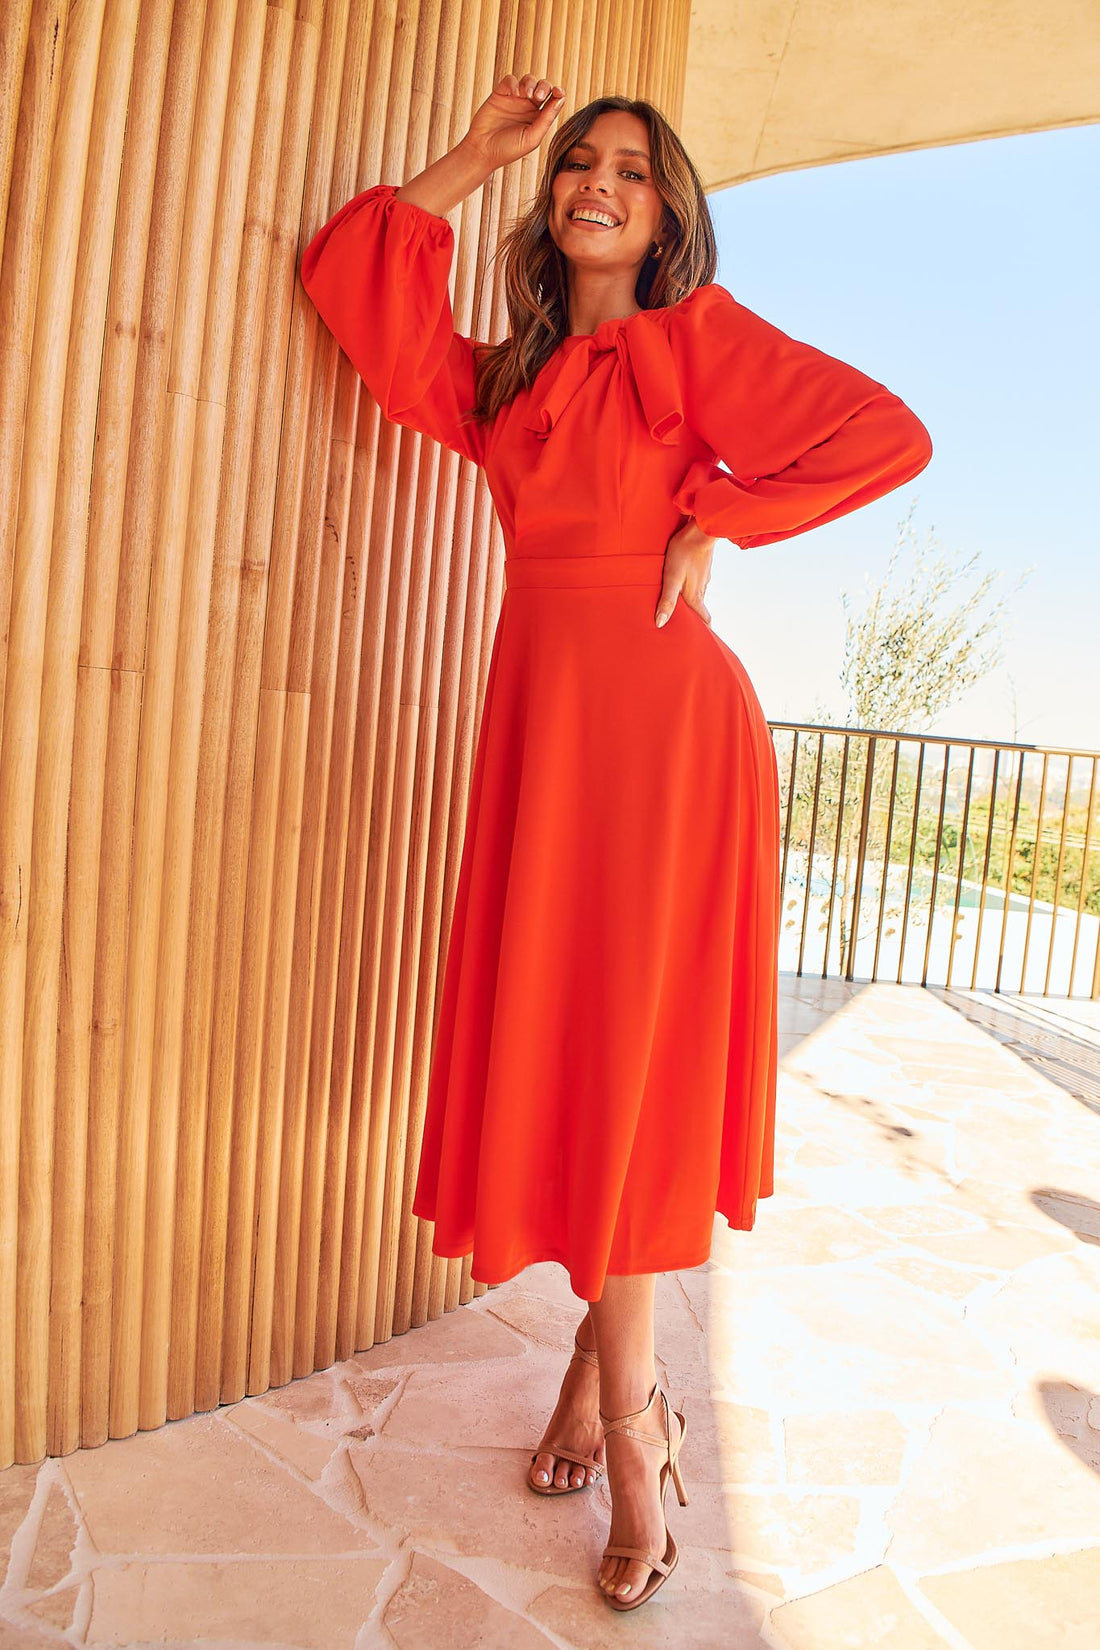 Kate Bow Shoulder Dress - Orange - FINAL SALE